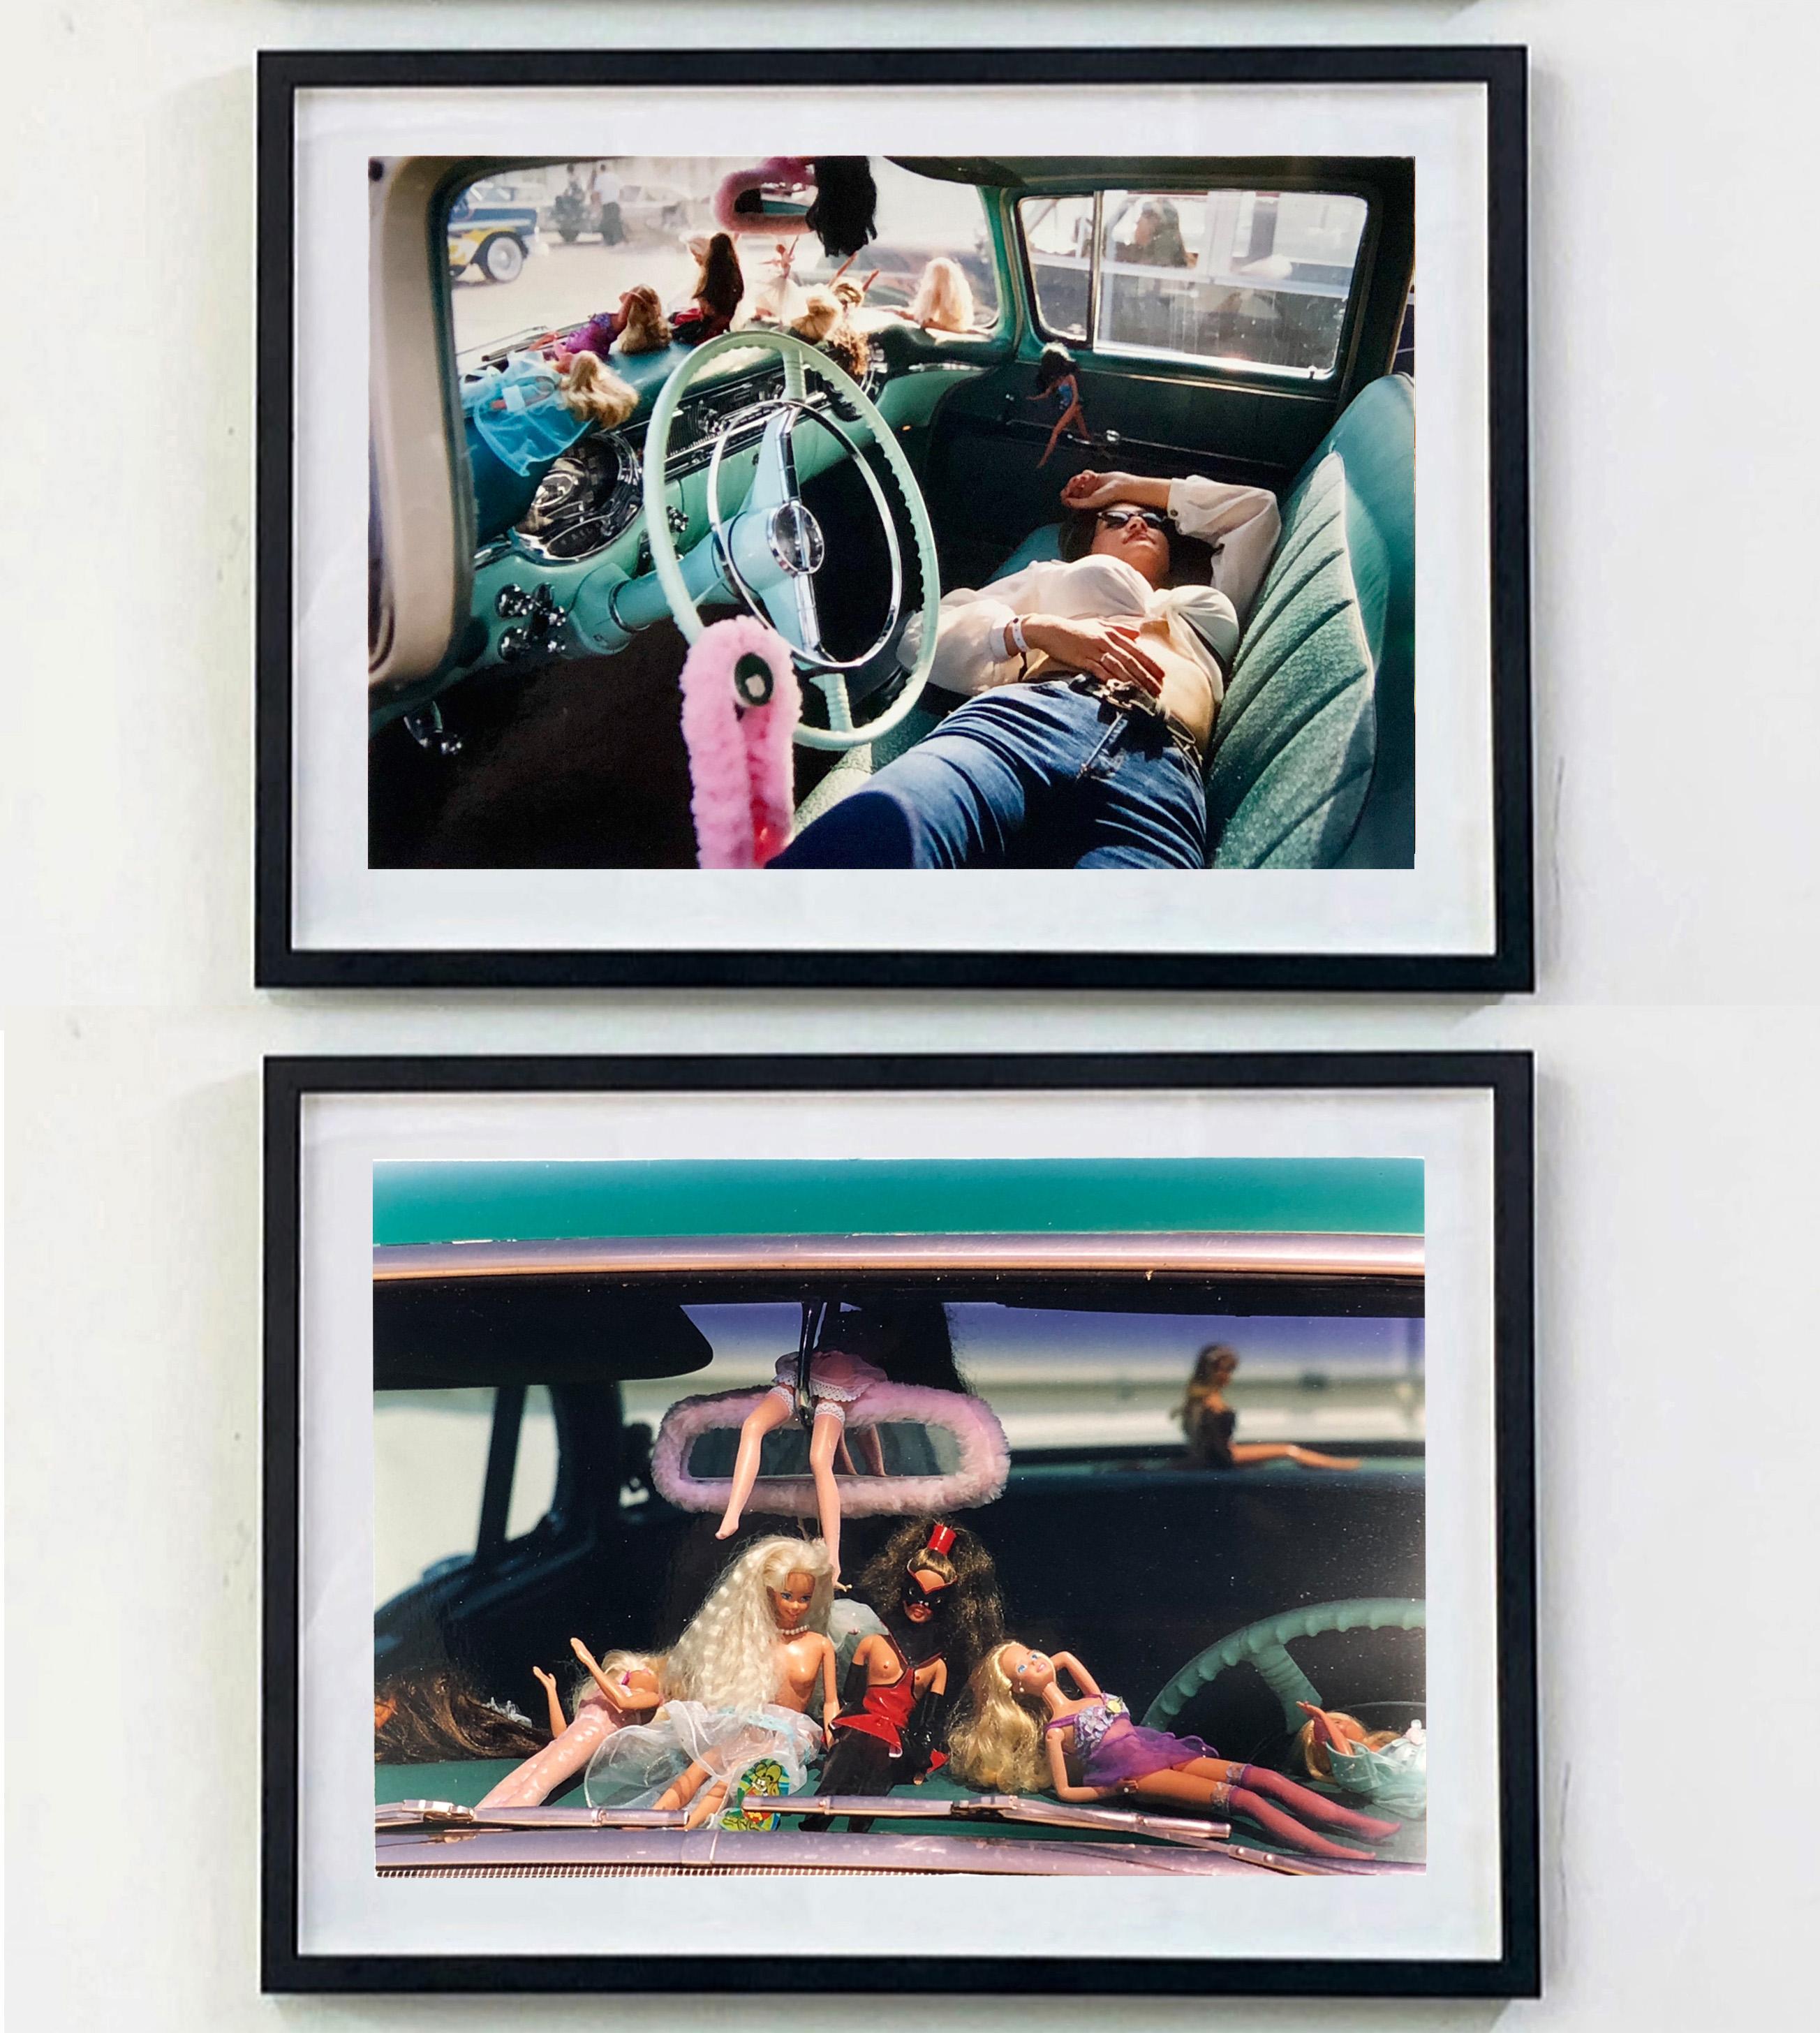 Wendy Resting, Las Vegas - Contemporary Portrait Color Photography 2